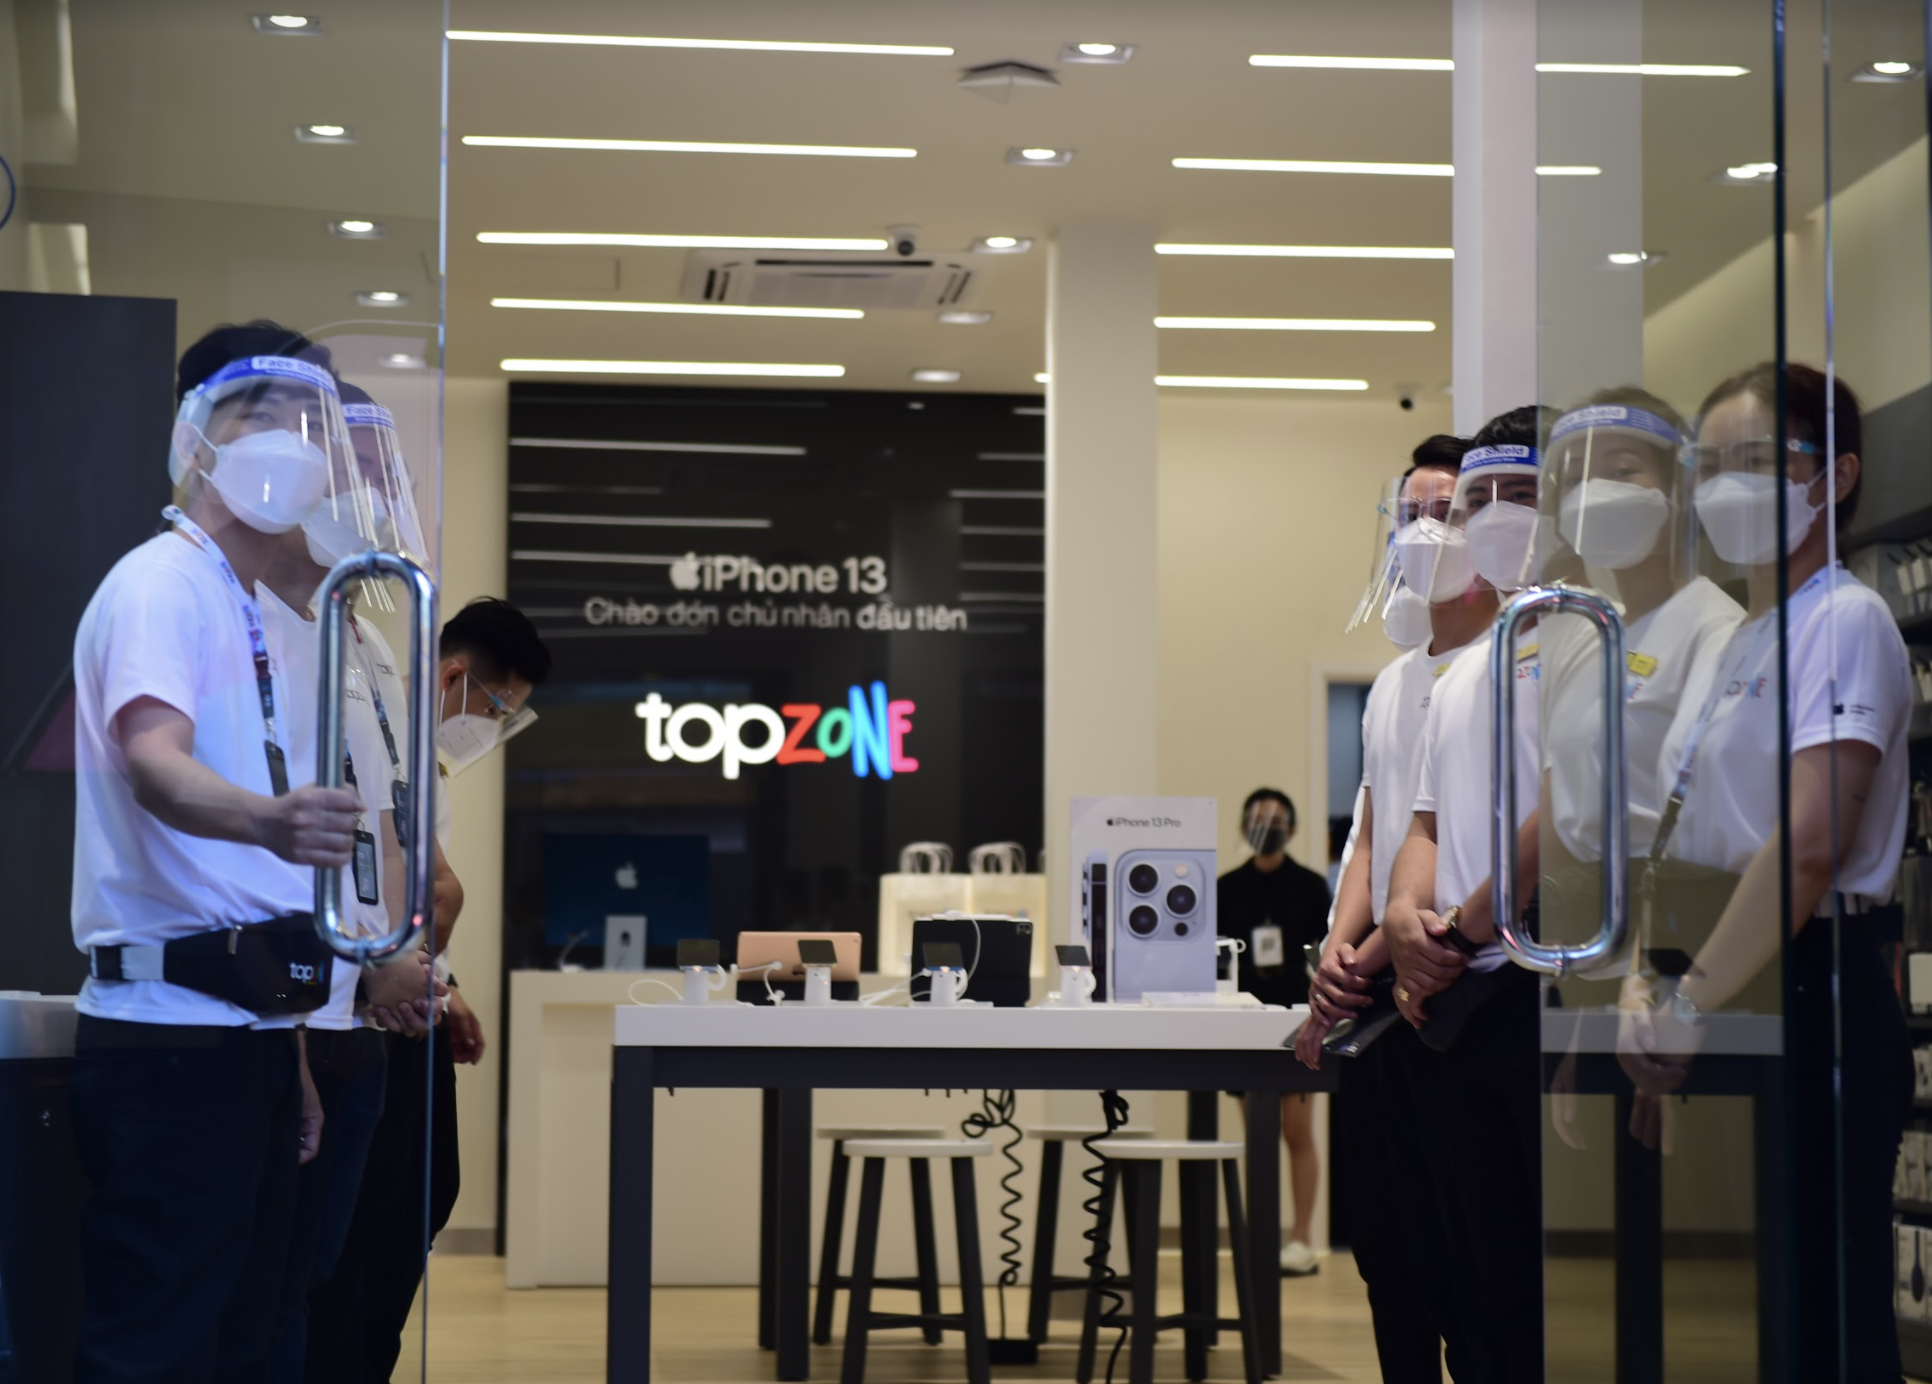  Bị đàn em TopZone phả hơi nóng, FPT Retail gấp rút mở rộng 50 cửa hàng chuyên bán đồ Apple  - Ảnh 2.